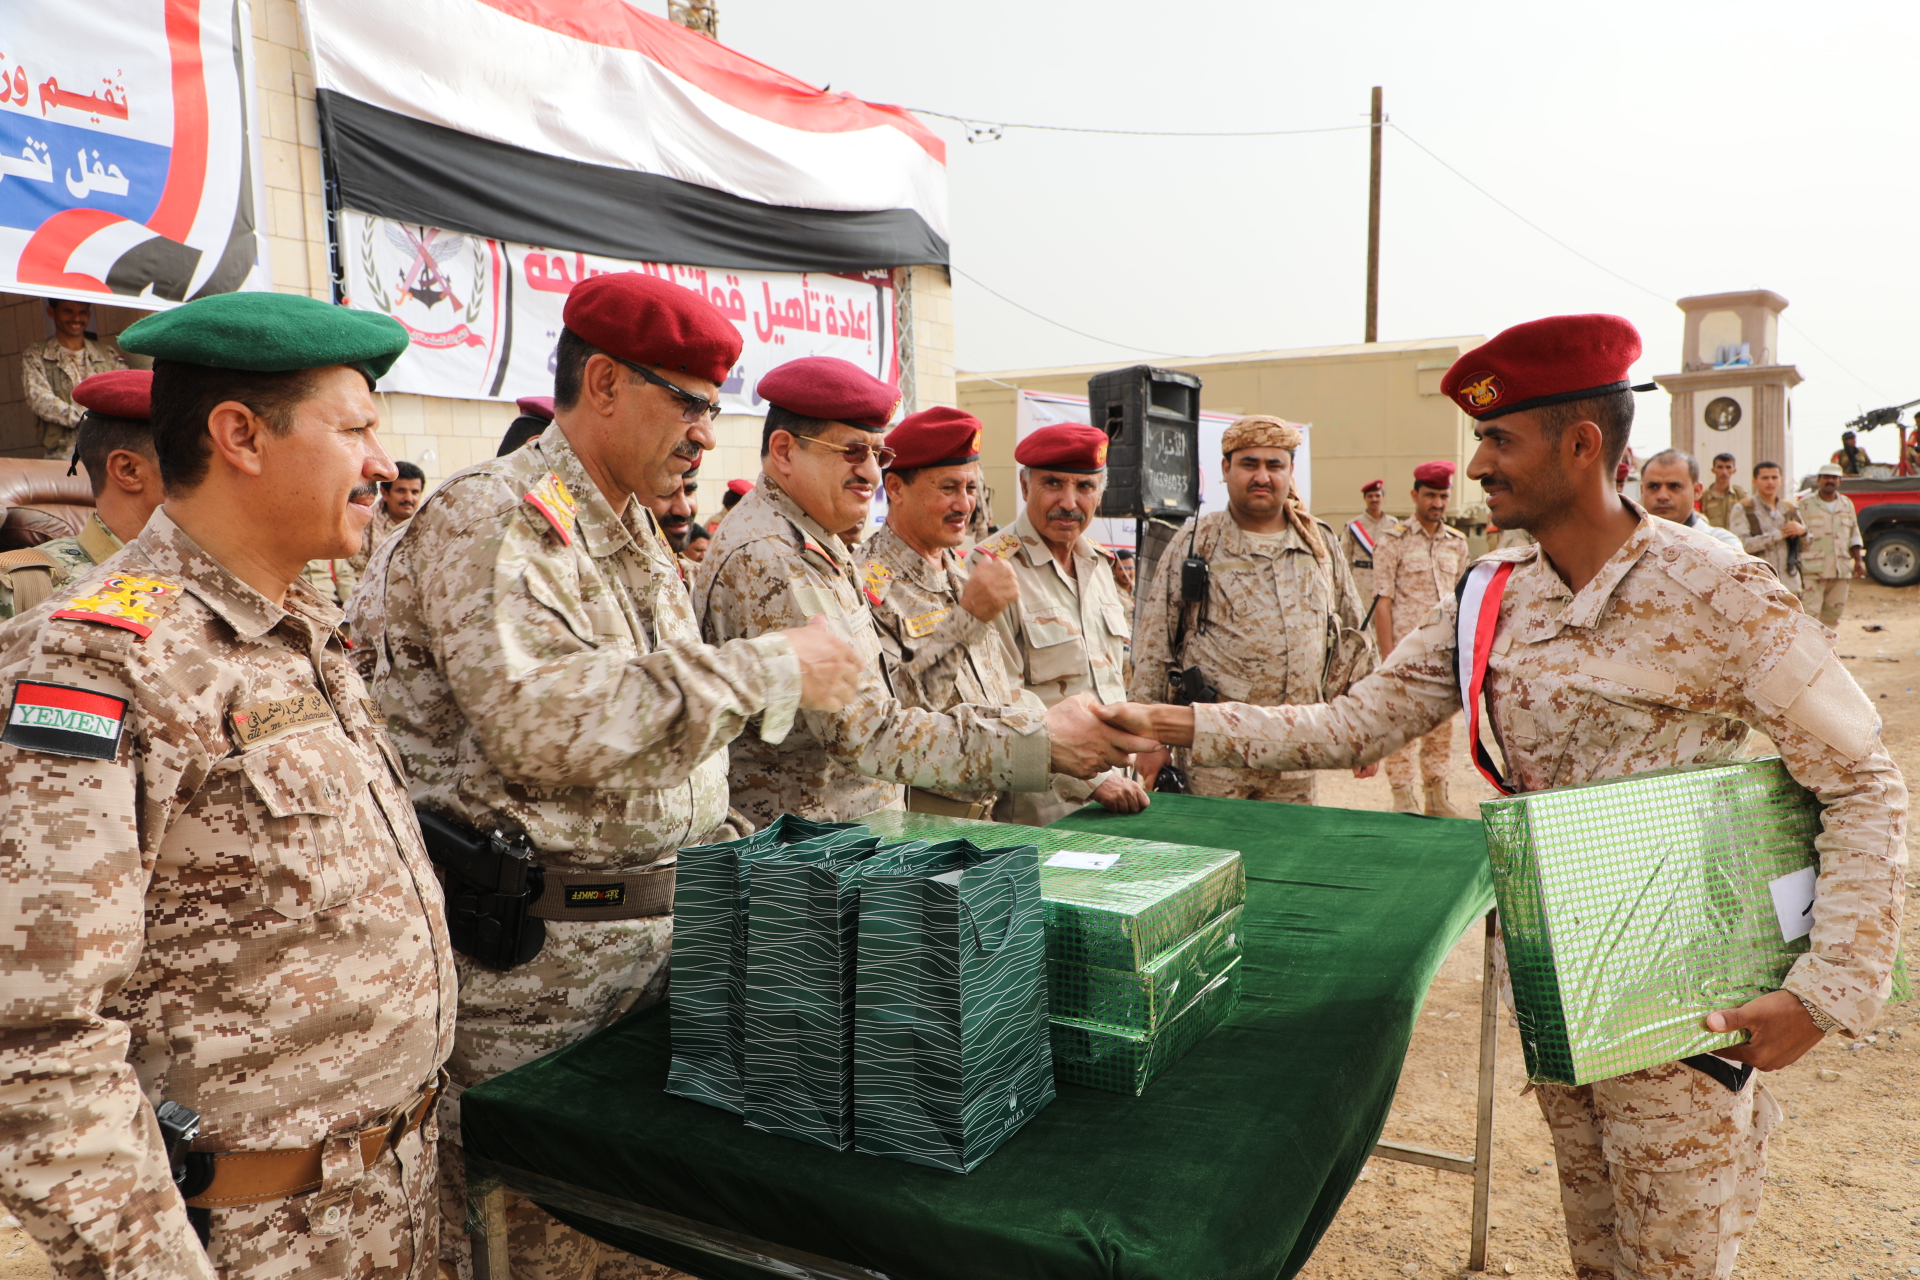 وزير الدفاع يؤكد أن المؤسسة العسكرية هي الرهان الضامن لاستكمال تحرير ما تبقى من الوطن من المليشيات الحوثية